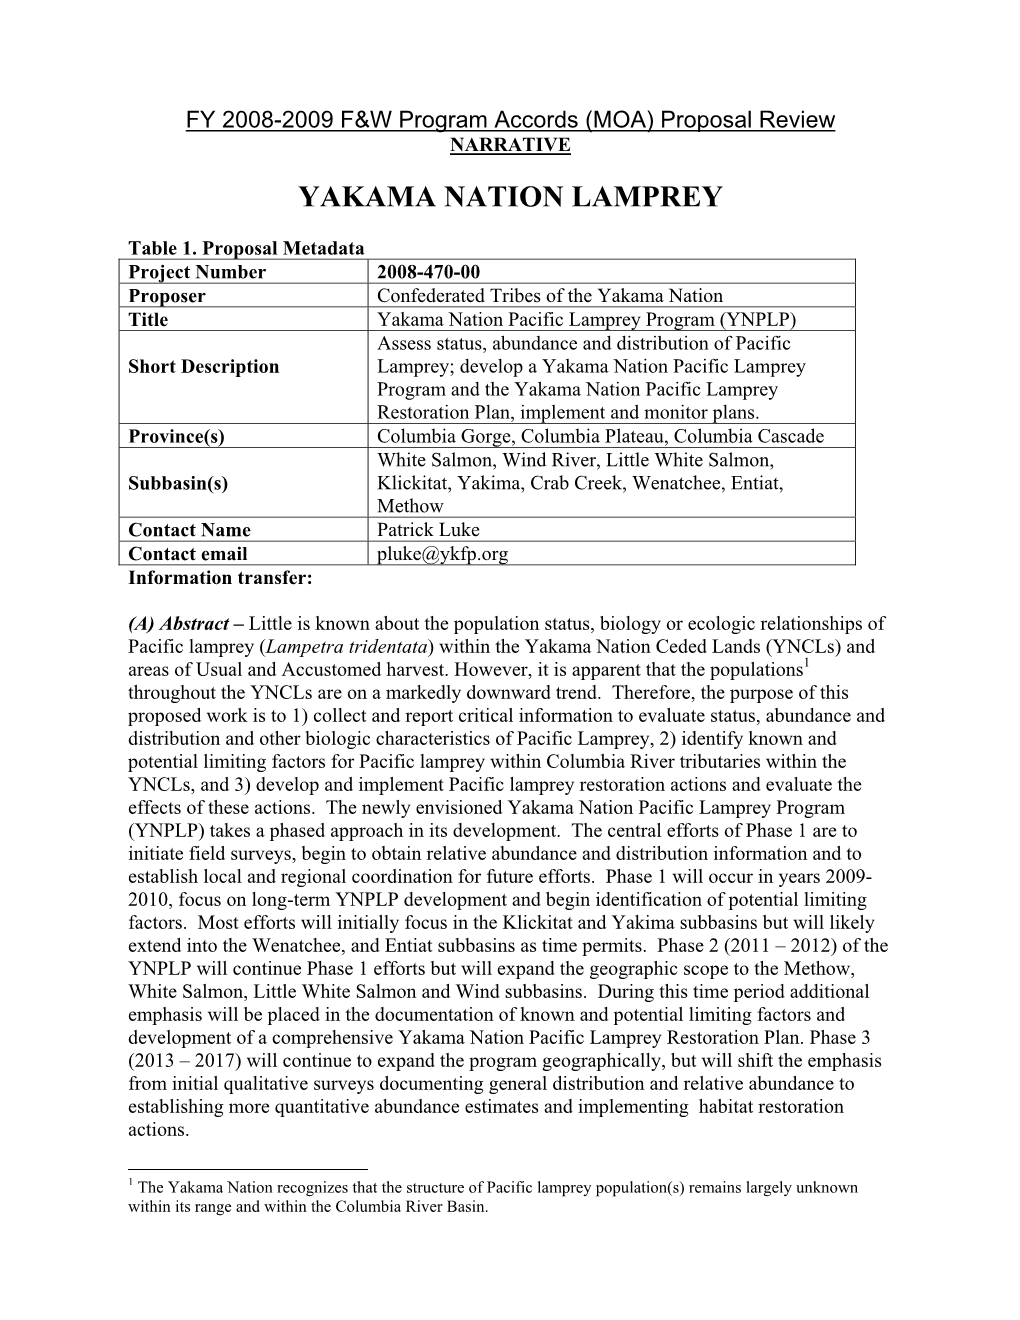 Yakama Nation Lamprey